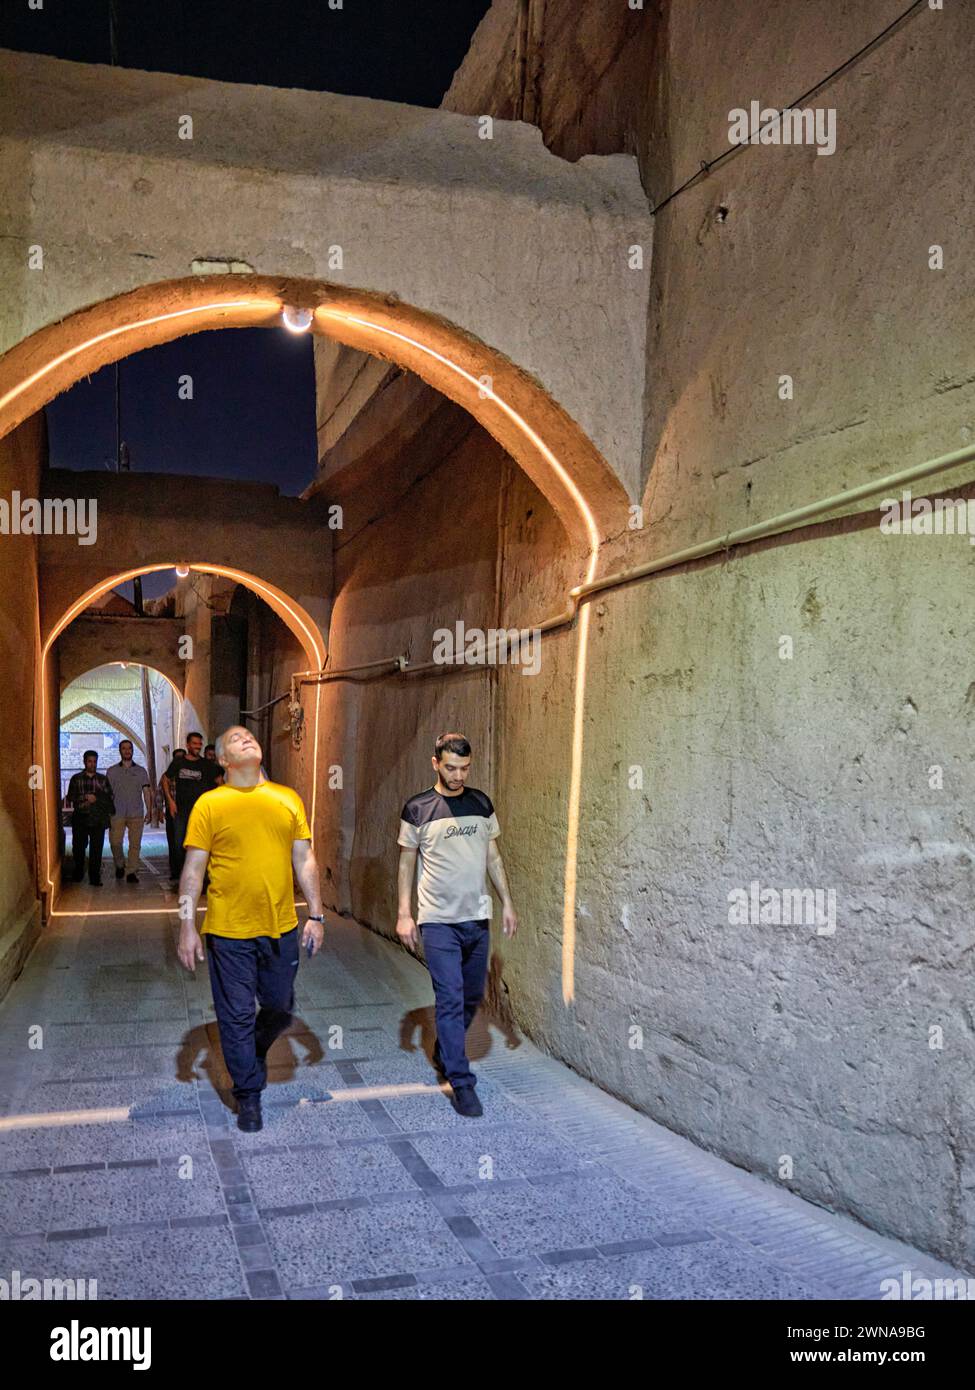 Les gens marchent dans une rue étroite avec des arcs brillamment illuminés la nuit dans le quartier historique de Fahadan à Yazd, en Iran. Banque D'Images